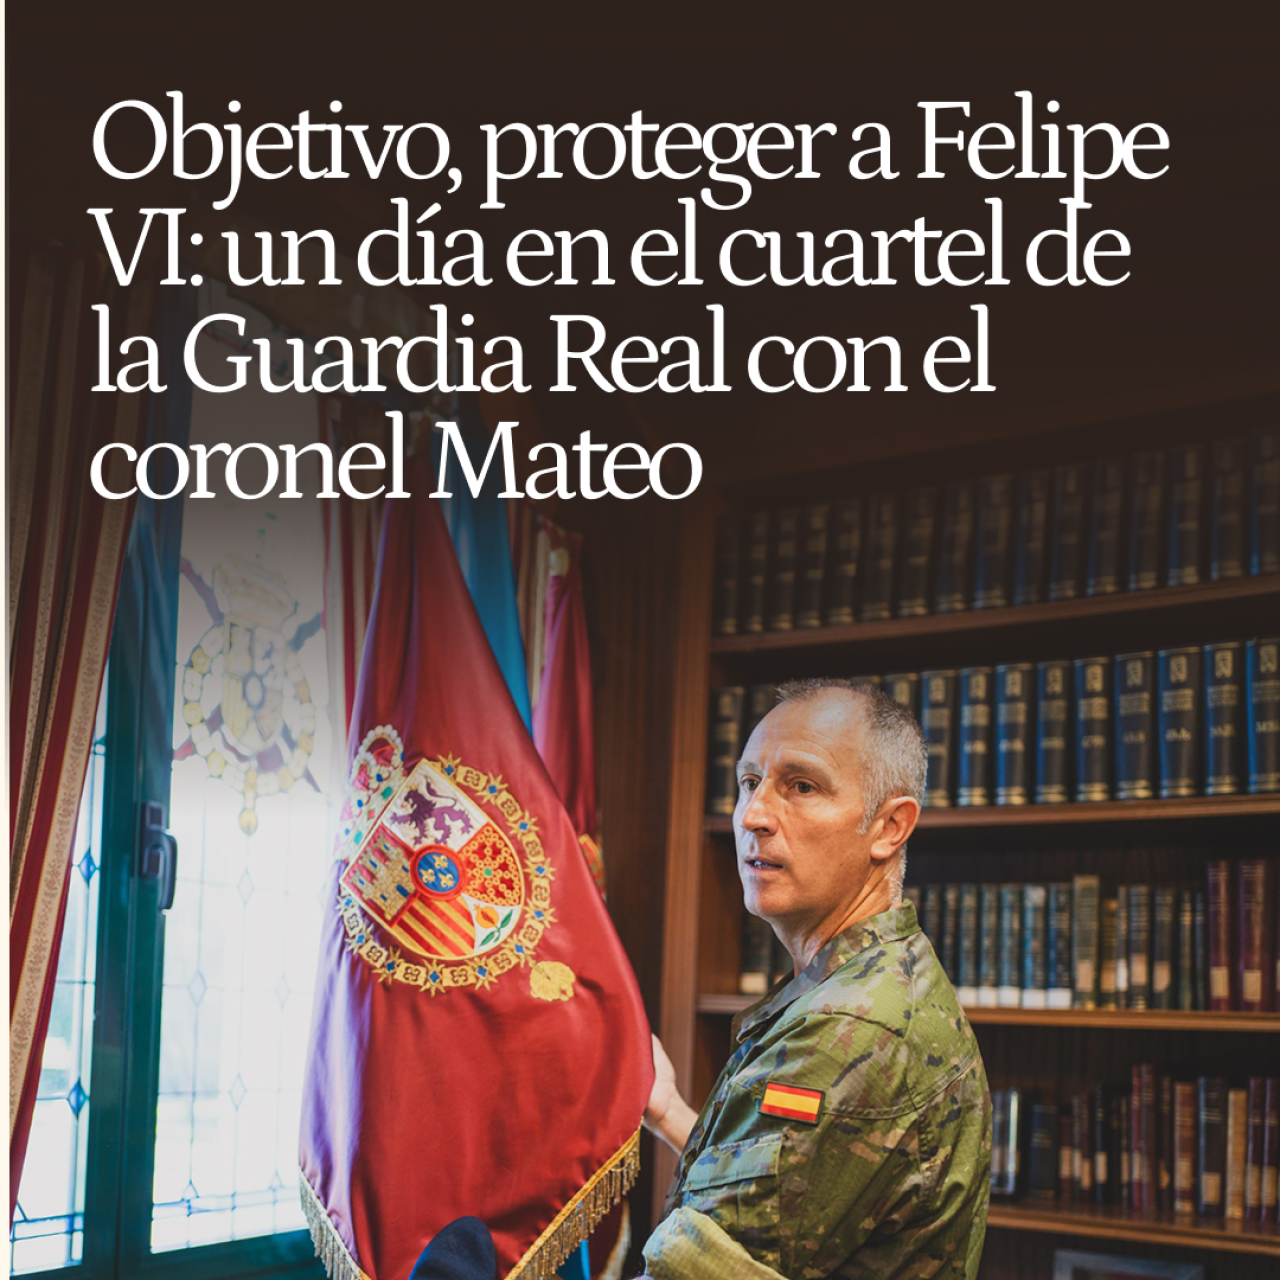 Objetivo, proteger a Felipe VI: un día en el cuartel de la Guardia Real con el coronel Mateo, el ángel custodio del Rey